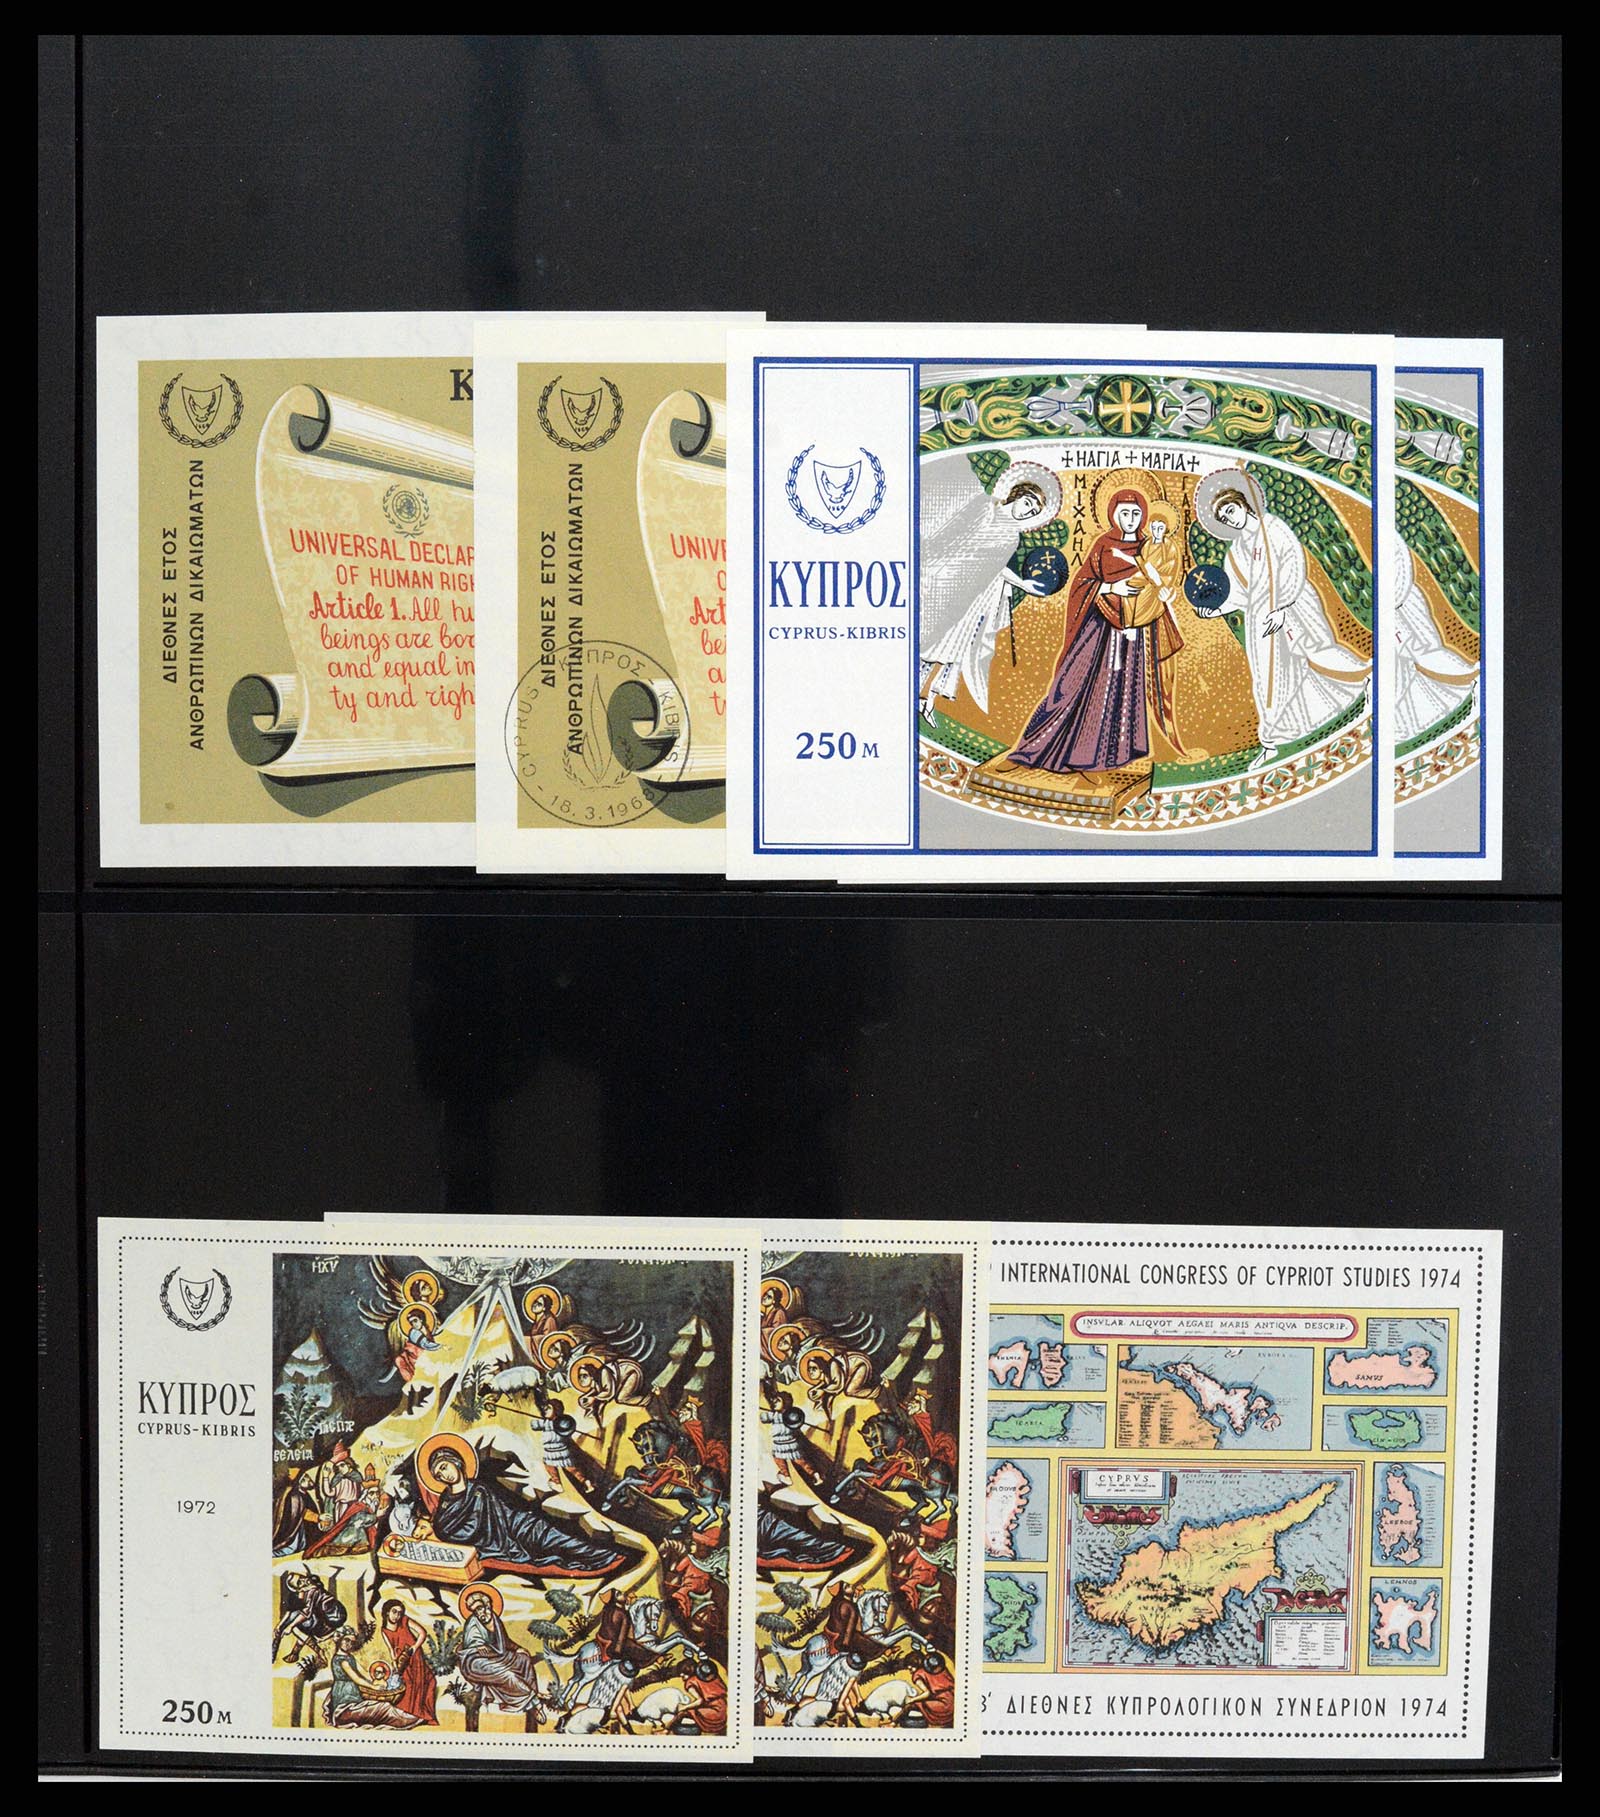 37345 014 - Stamp collection 37345 European countries souvenir sheets.